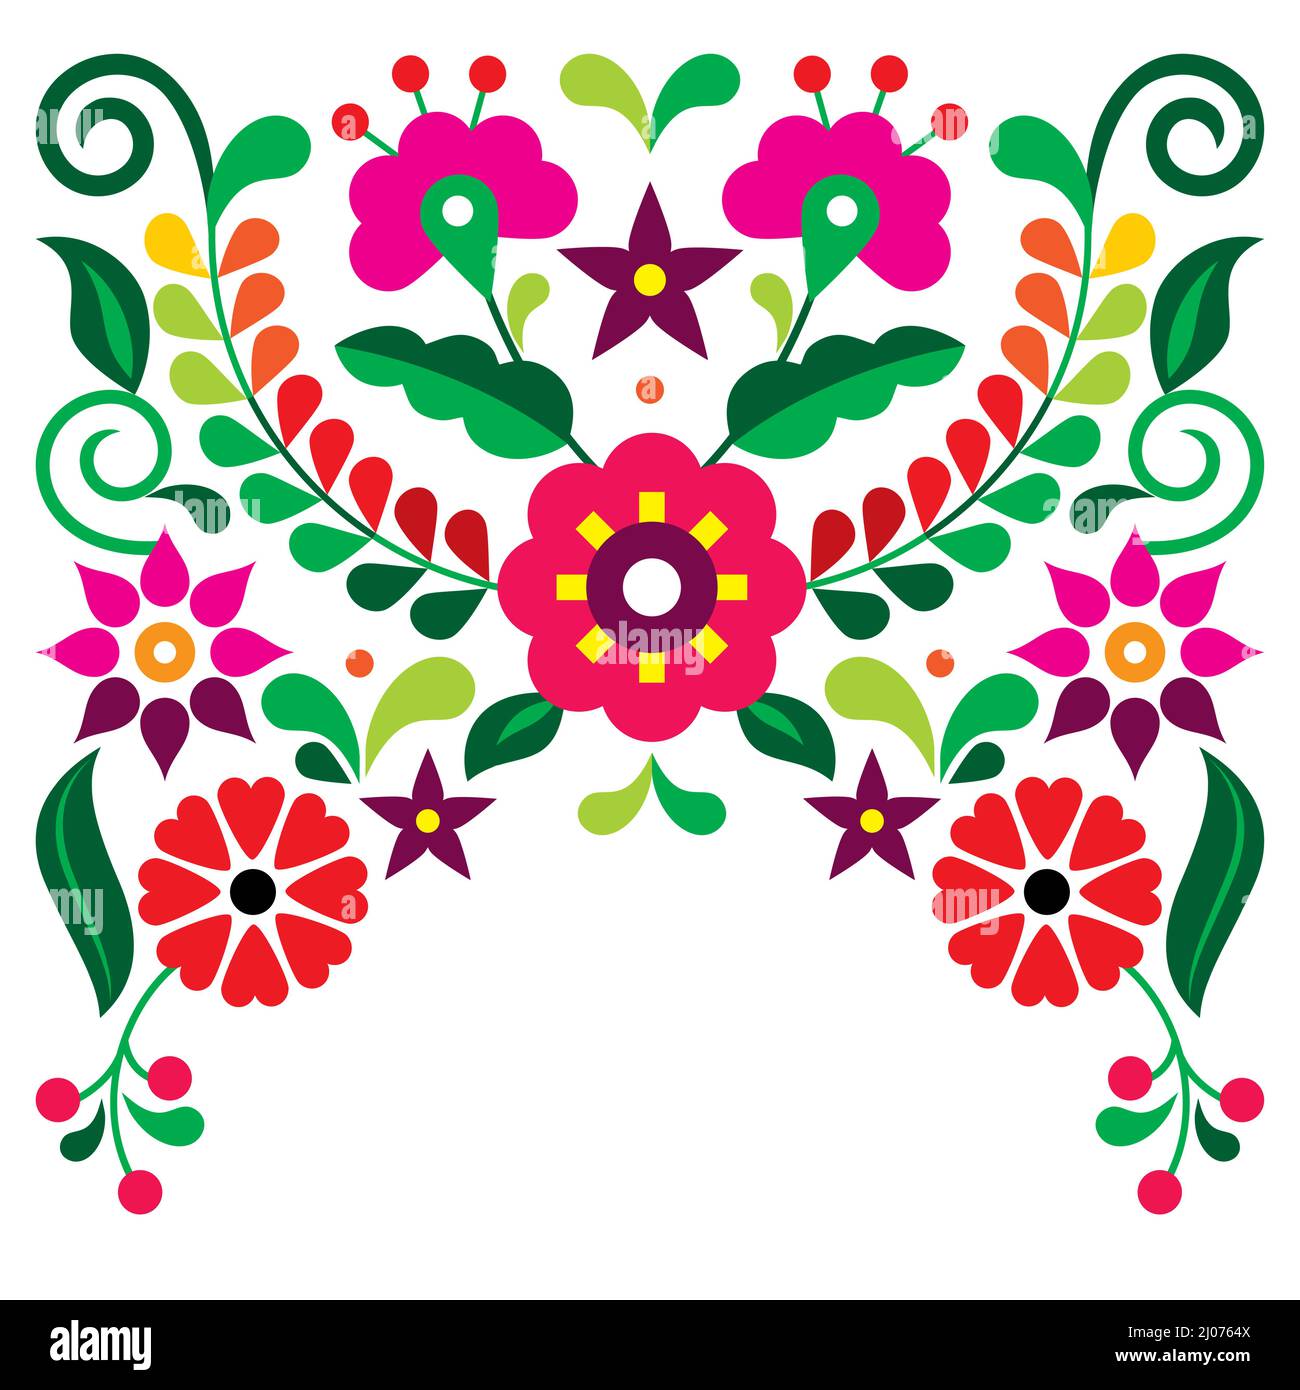 Carte de vœux vectorielle de style art traditionnel mexicain ou motif d'invitation avec fleurs rouges et roses, motif vibrant inspiré de ma broderie Illustration de Vecteur